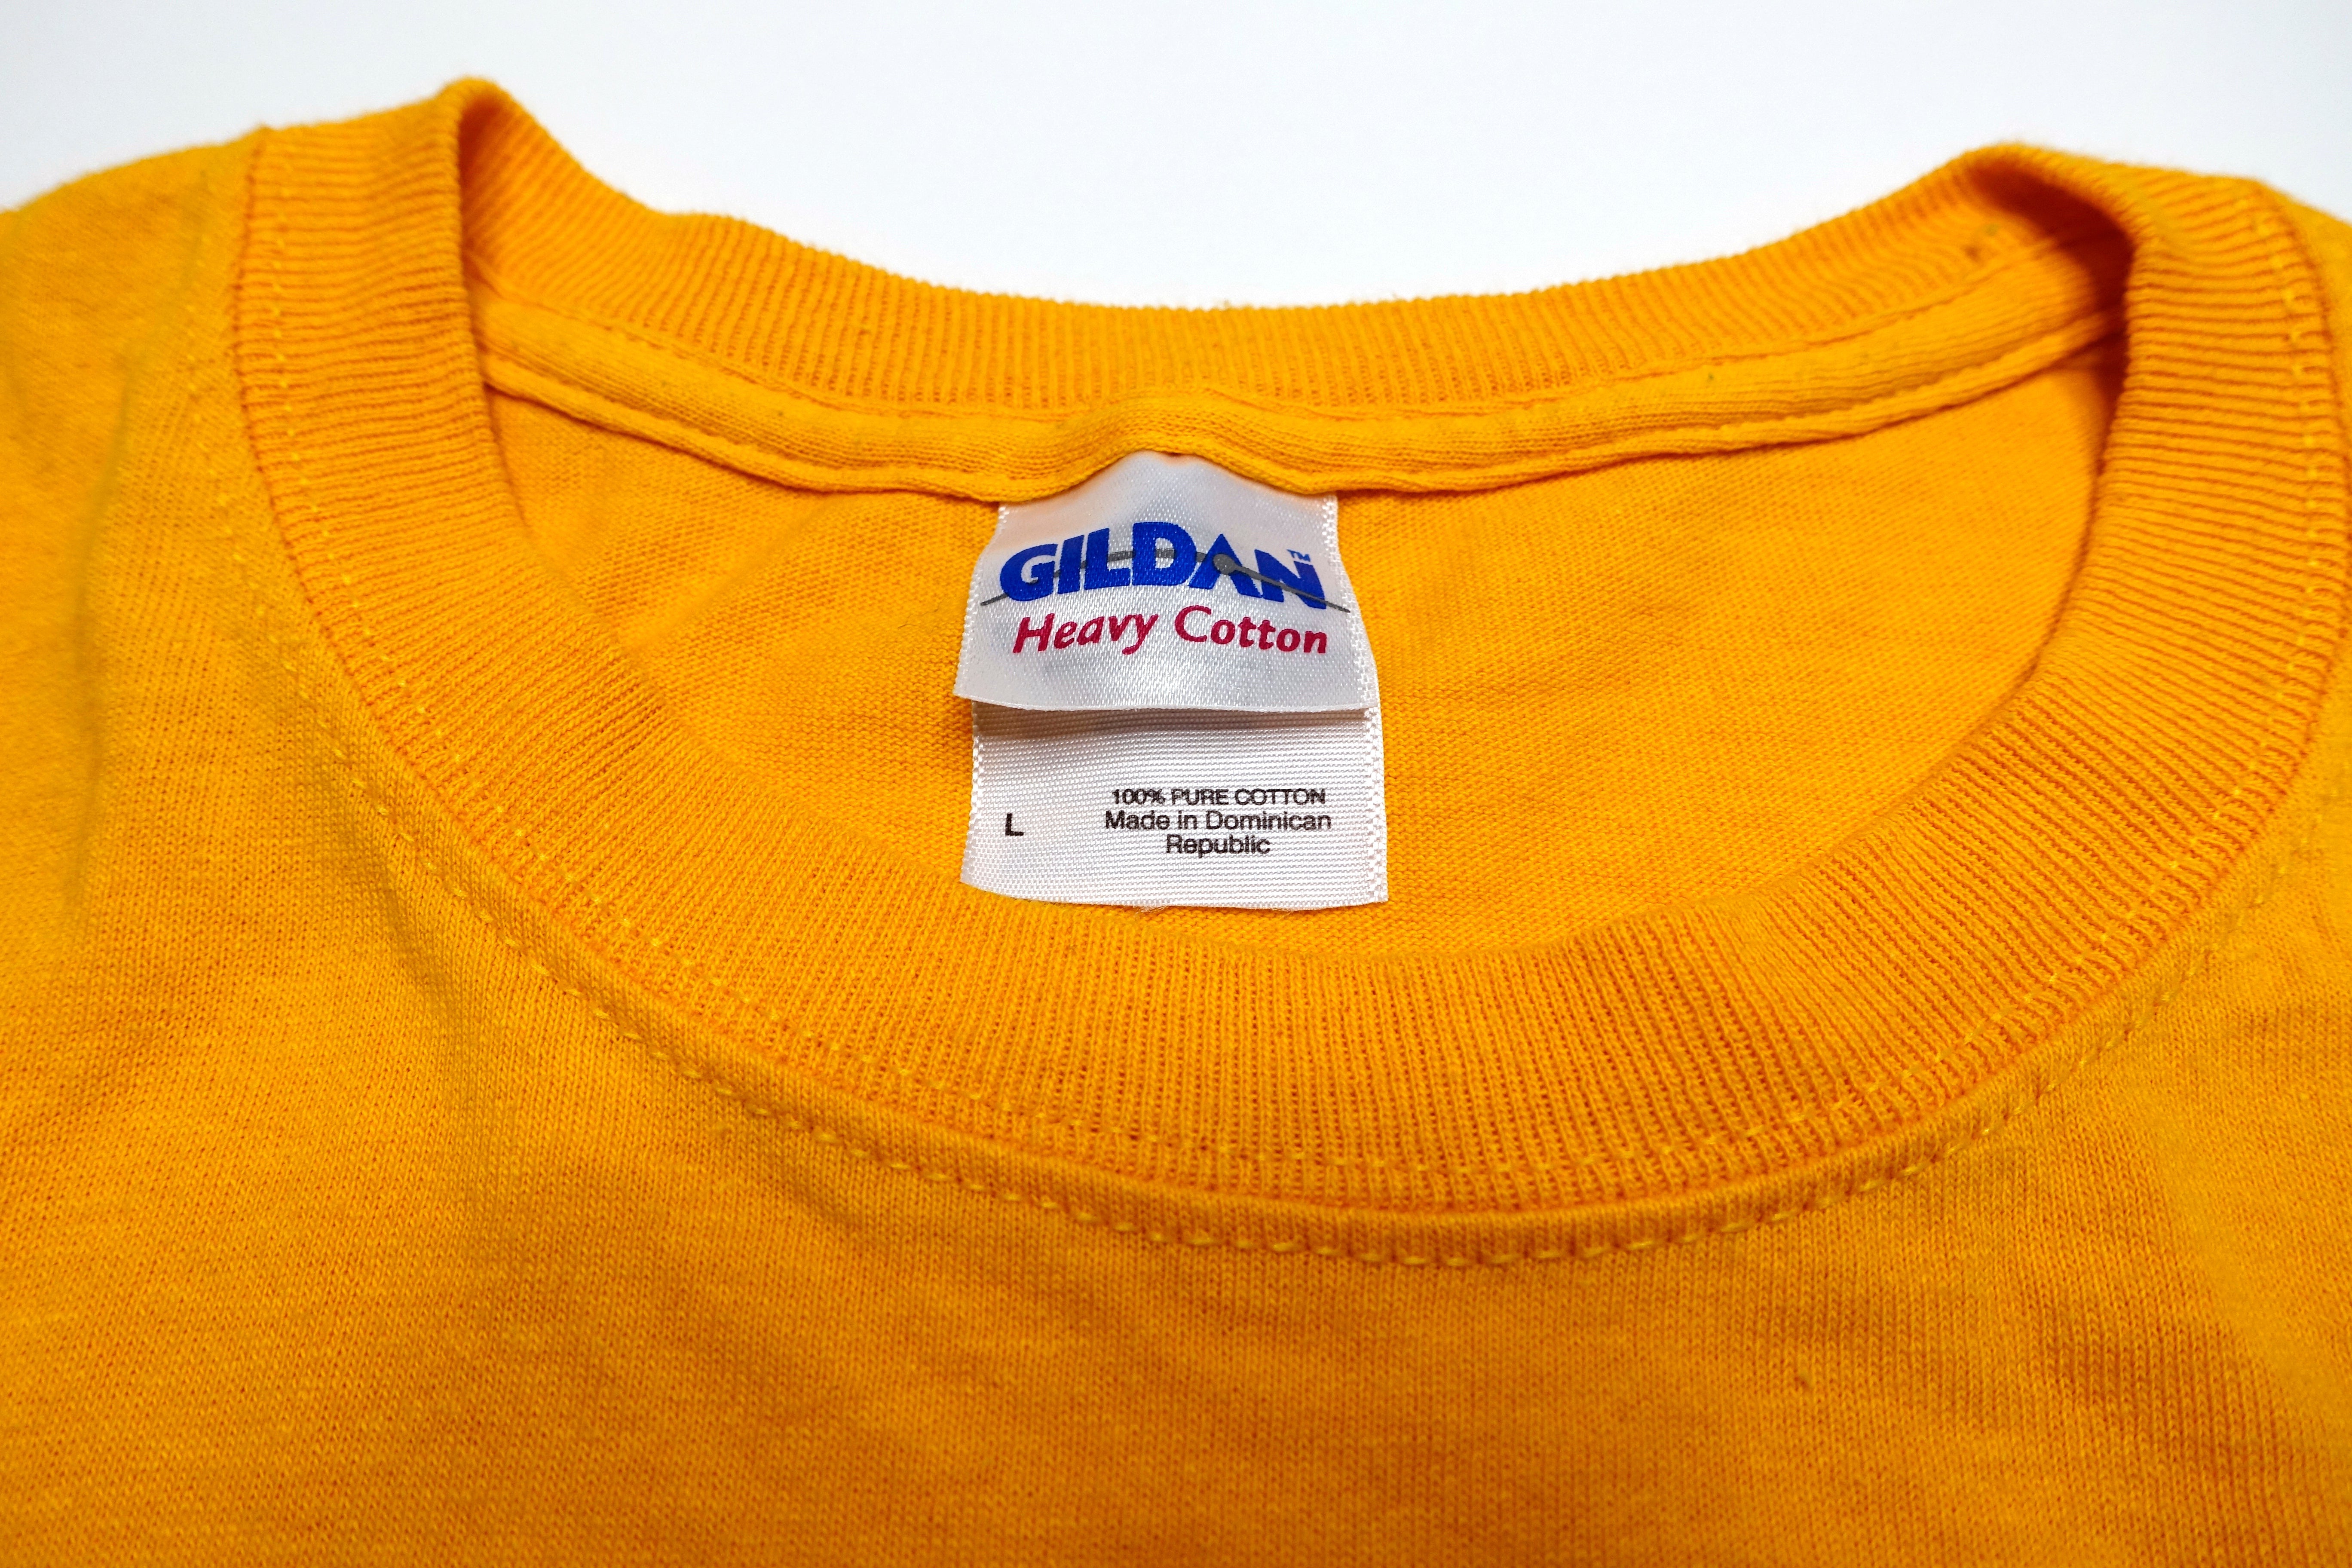 Klaxons – Golden Skans 2007 Tour Shirt Size Large